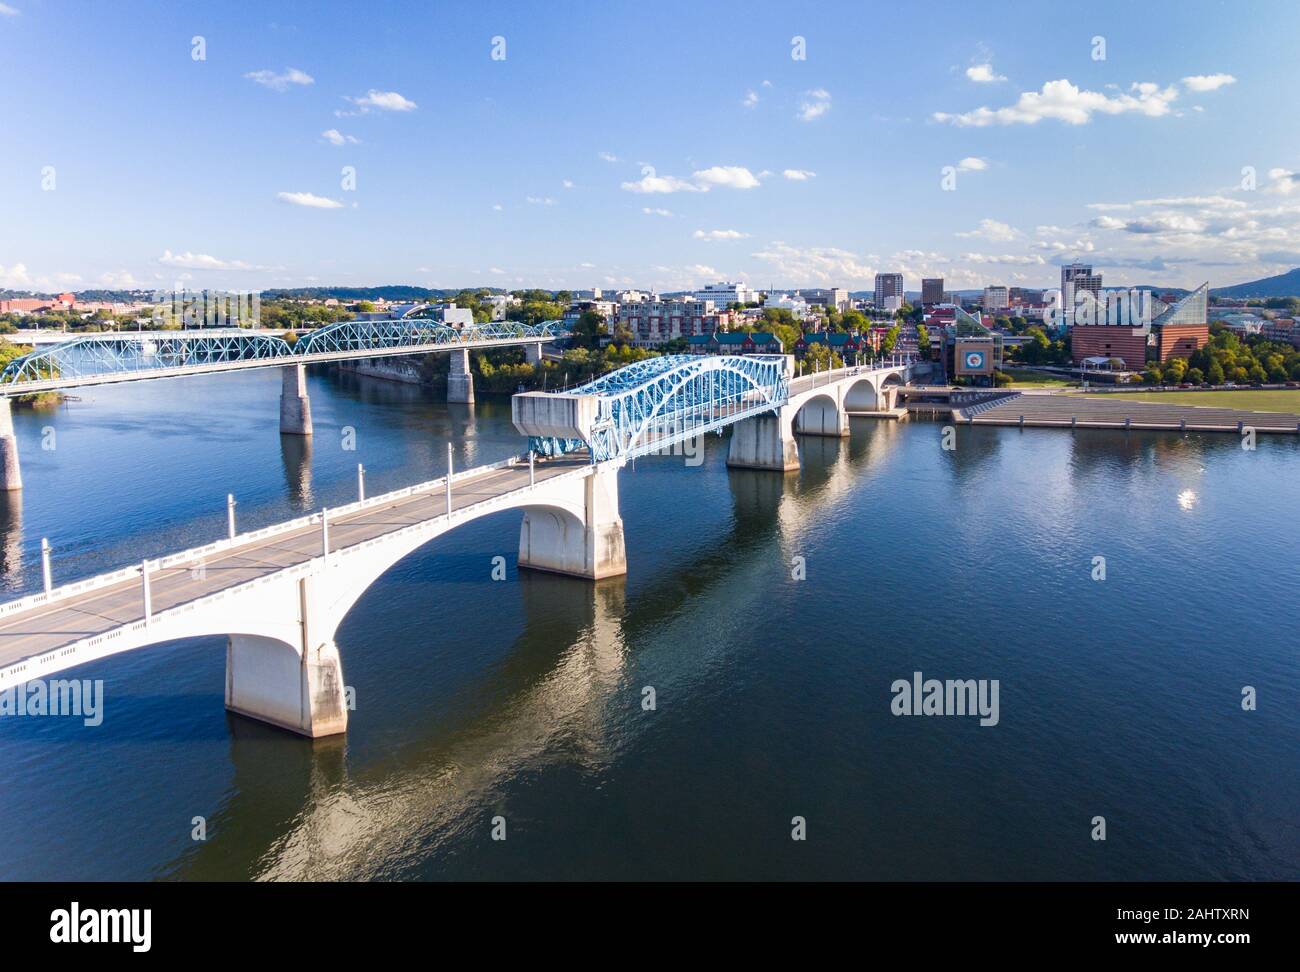 Chattanooga, TN - 8 octobre, 2019 : Vue aérienne de la ville de Chattanooga le long de la rivière Tennessee Banque D'Images